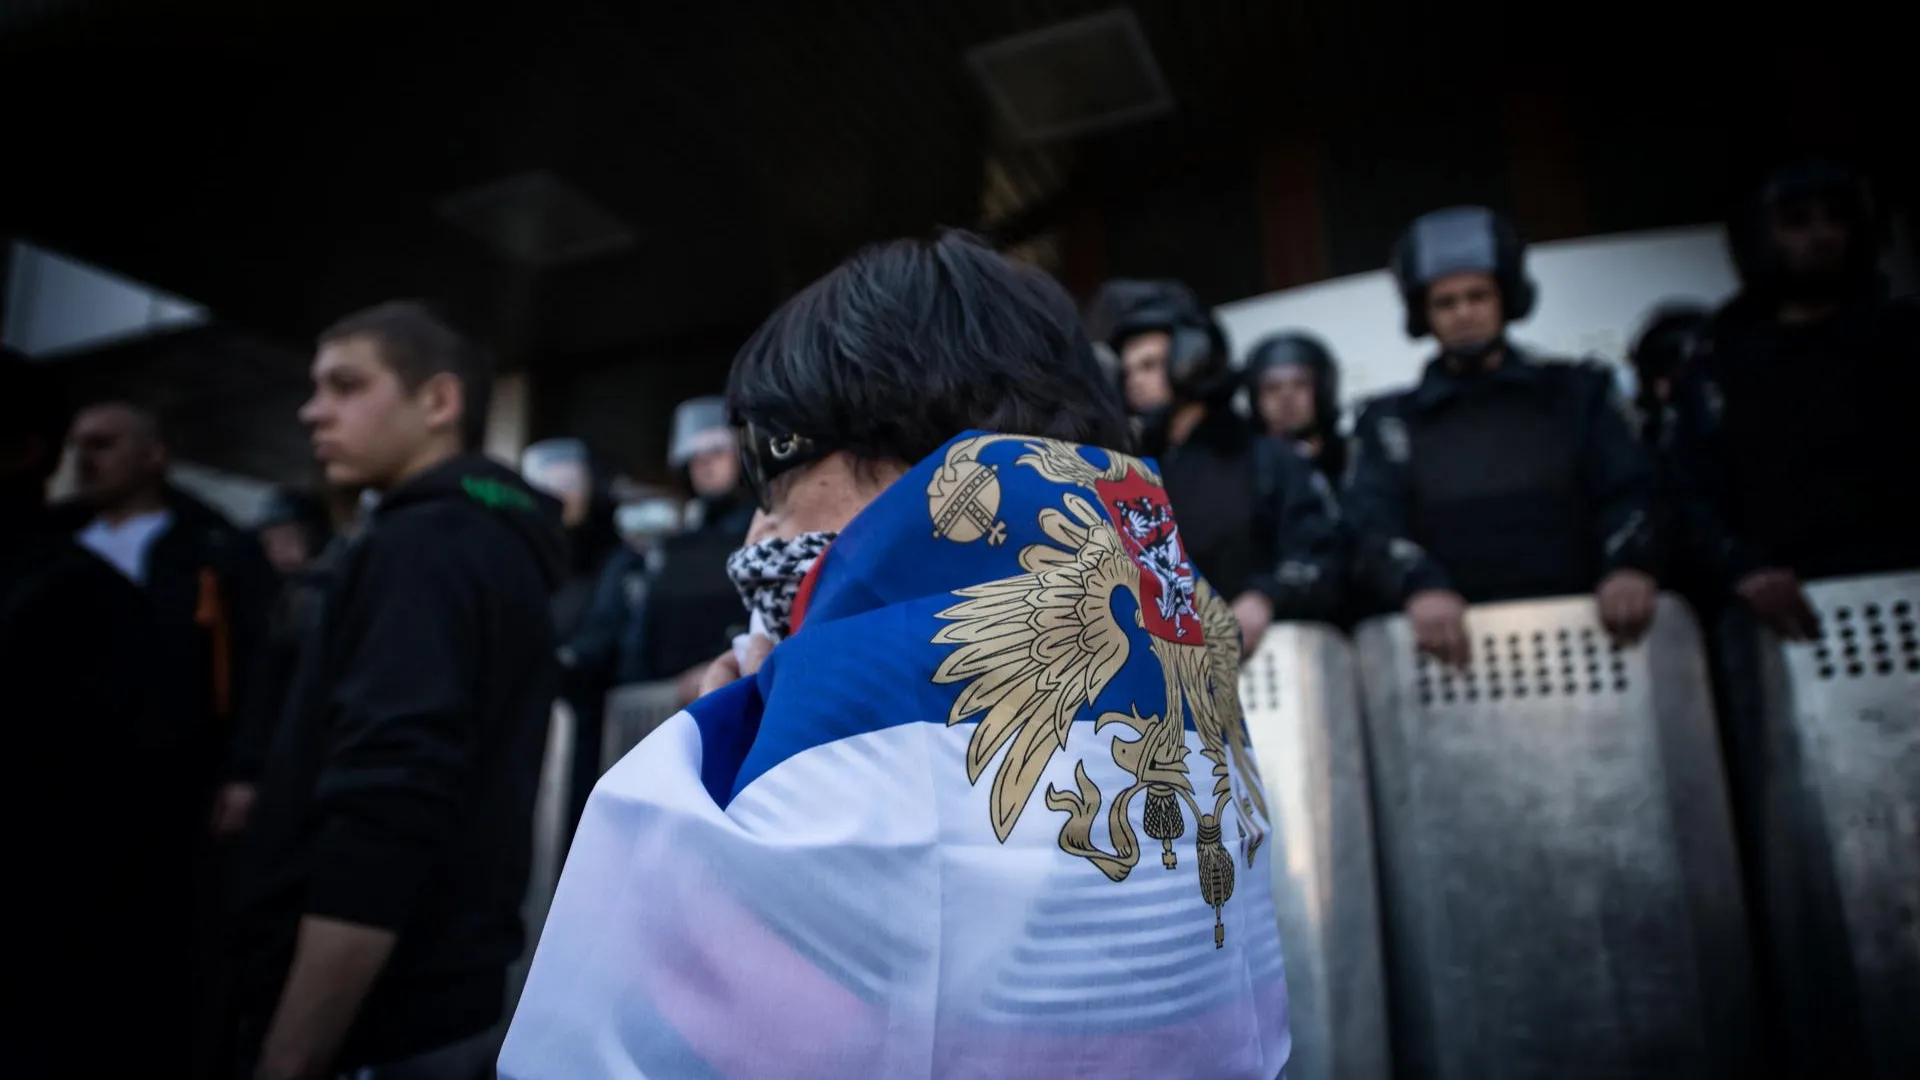 Пророссийский митинг в Донецке, март 2014 года / Romain Carre / ZUMAPRESS.com